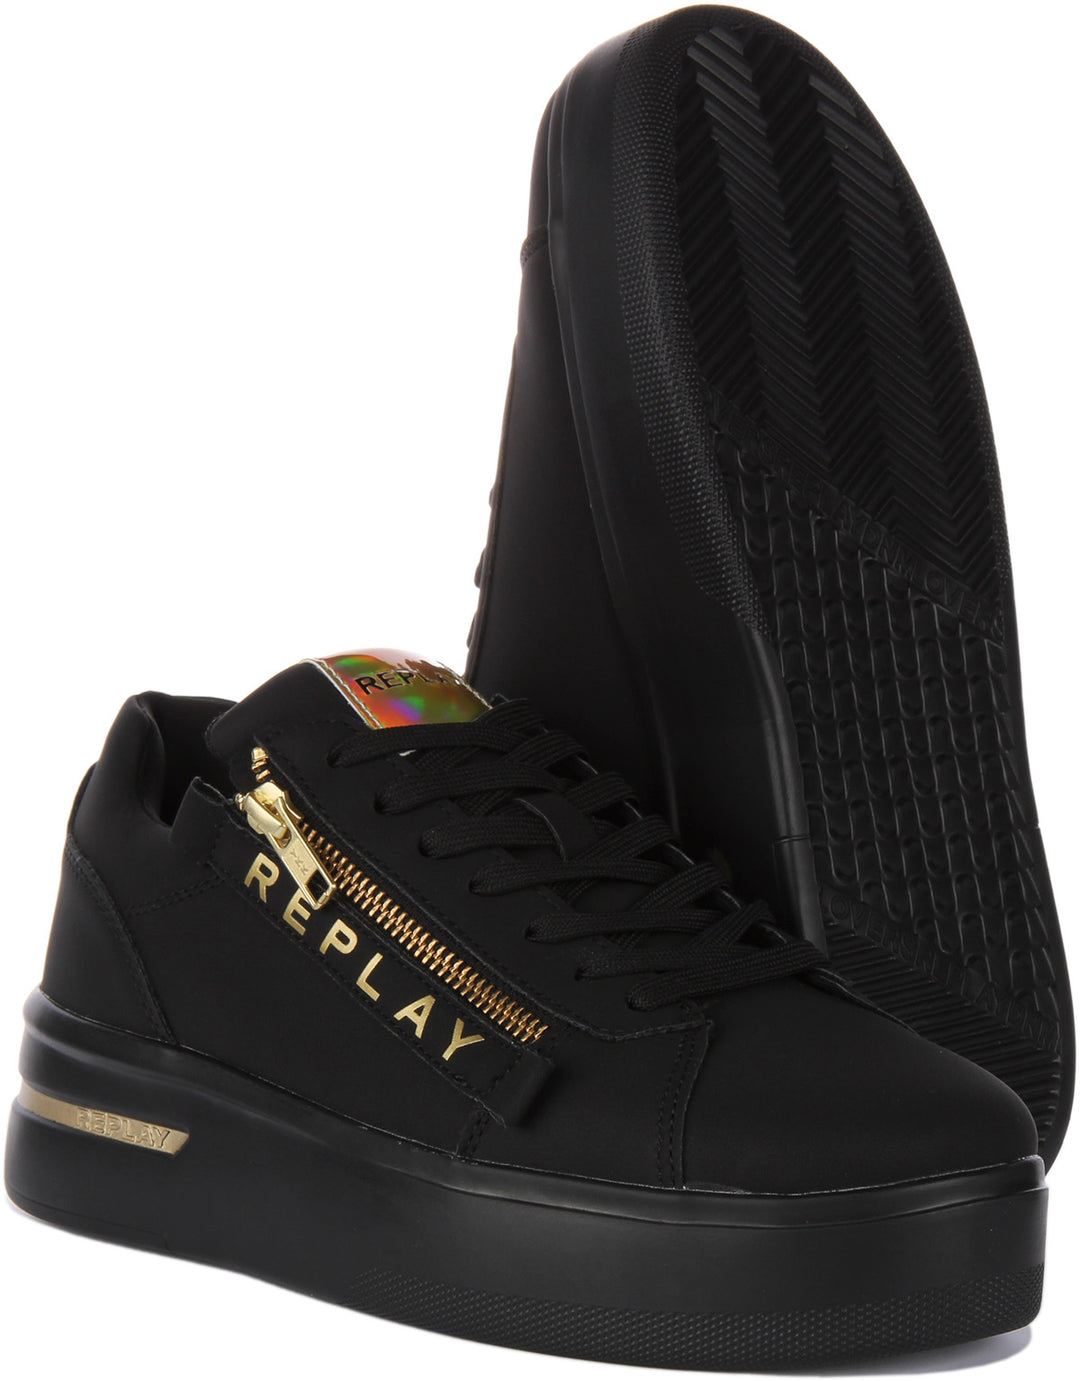 Replay University Zip Zapatillas de deporte sintéticas con cordones y cremallera lateral para mujer en negro dorado